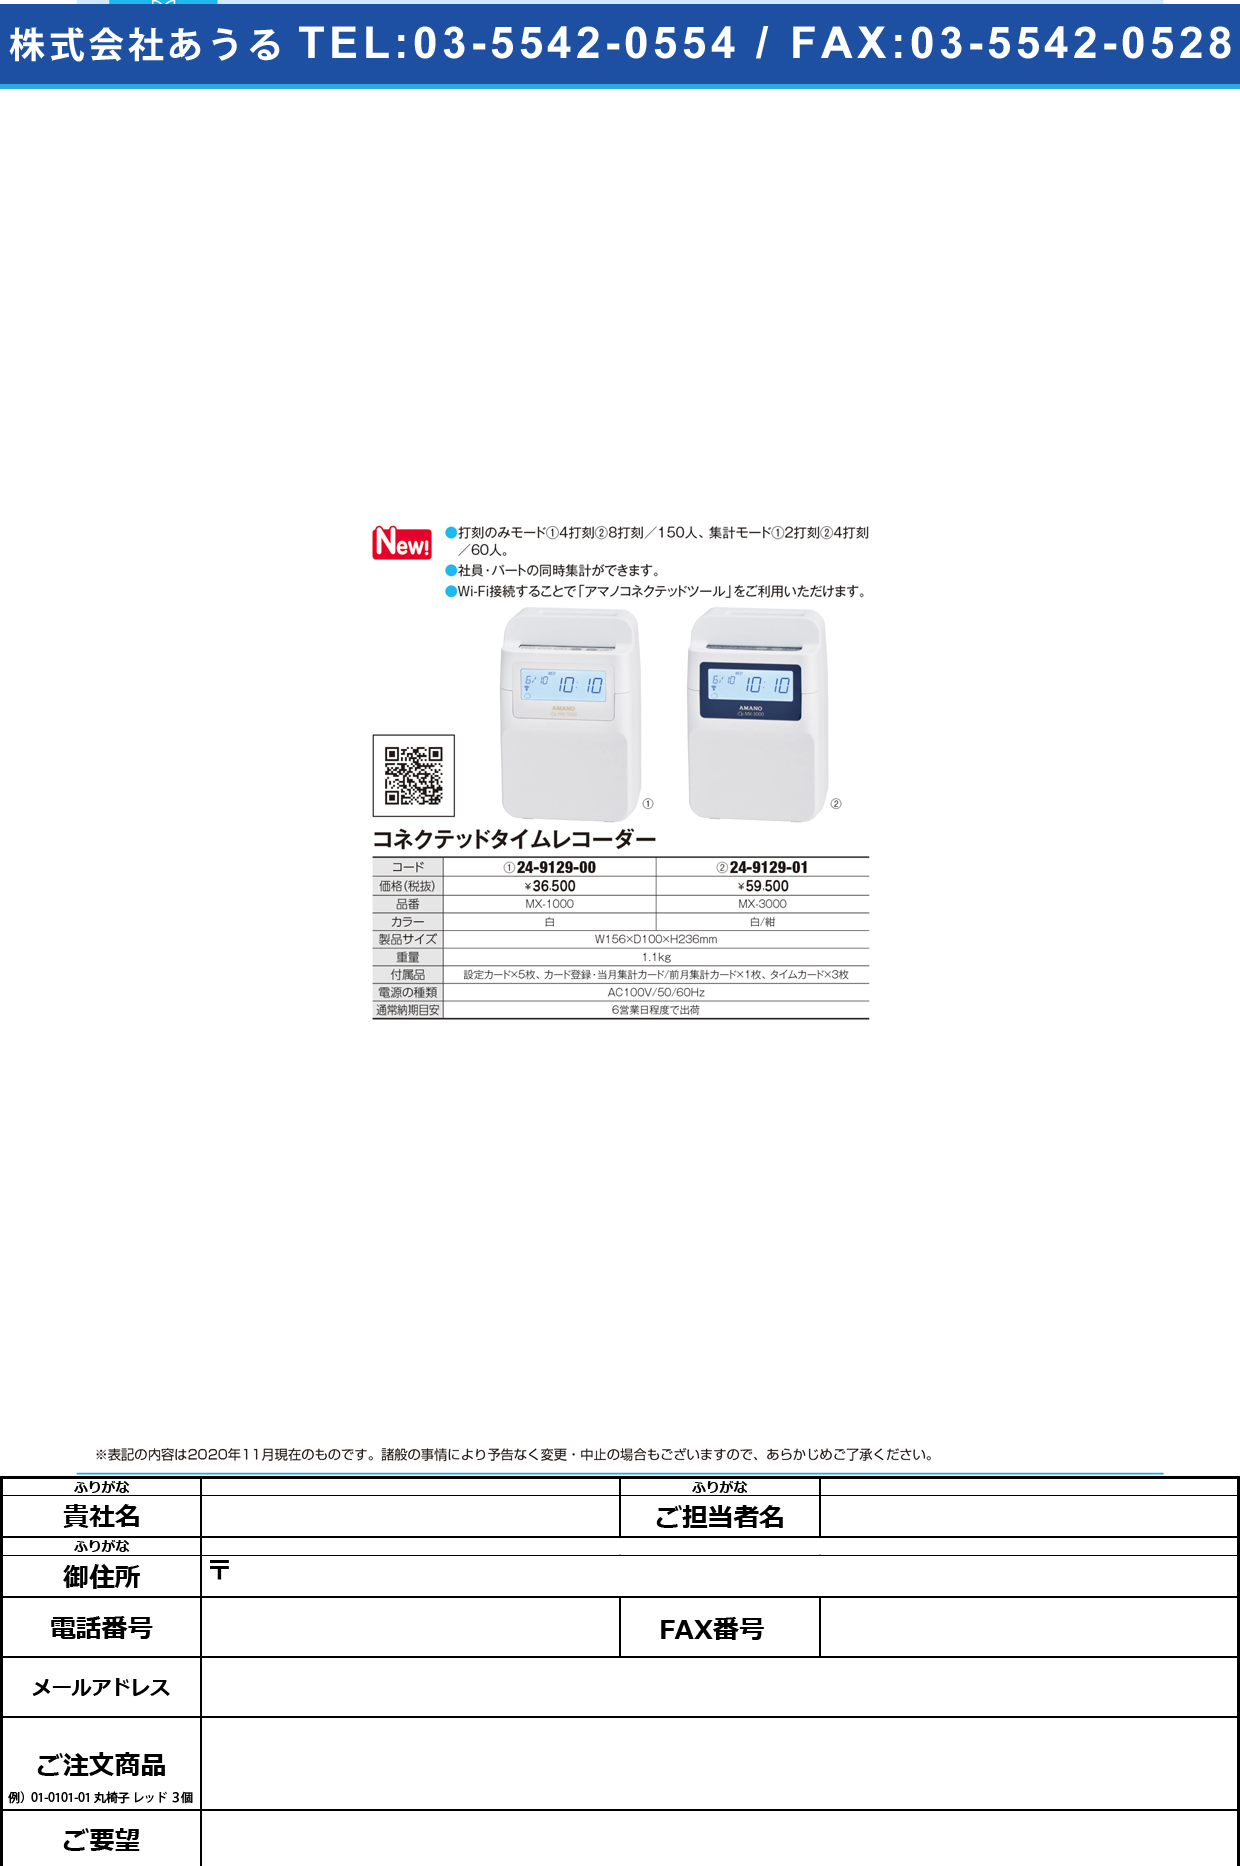 アマノ コネクテッドタイムレコーダーMX-3000MX-3000(24-9129-01)【東京クラウン】(販売単位:1)